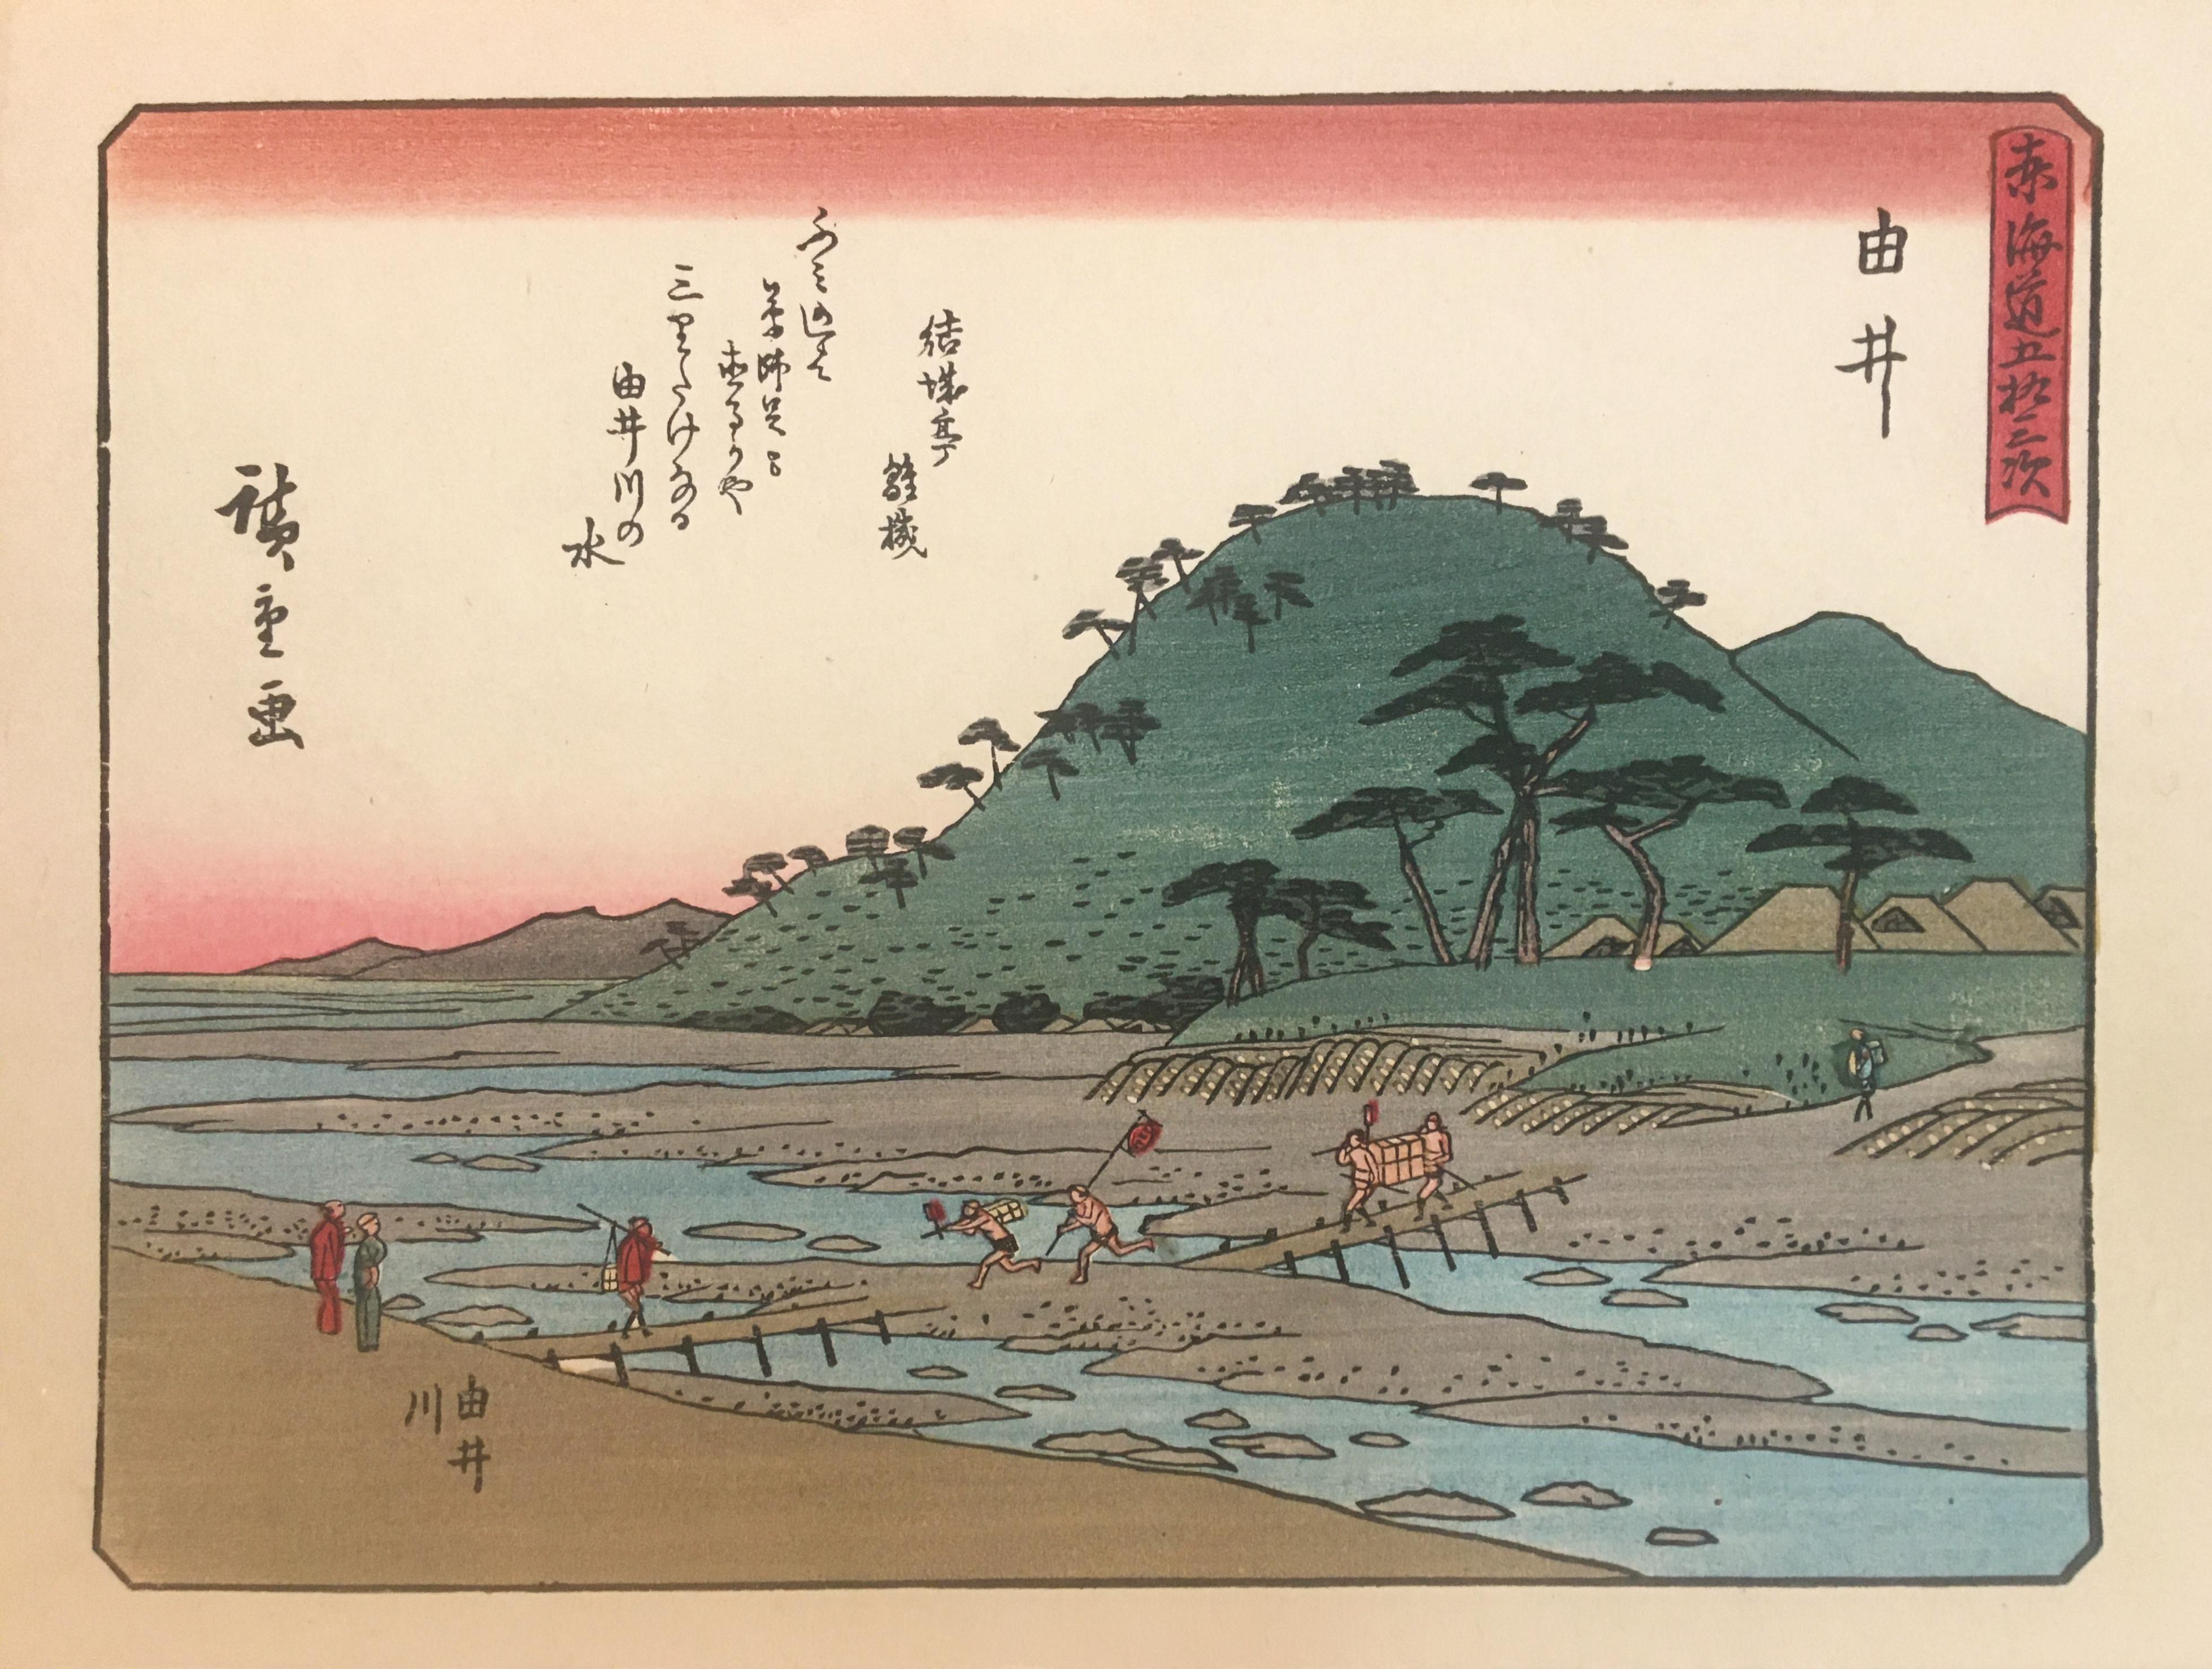 „View of Yui“, nach Utagawa Hiroshige, Ukiyo-E-Holzschnitt, Tokaido, Edo